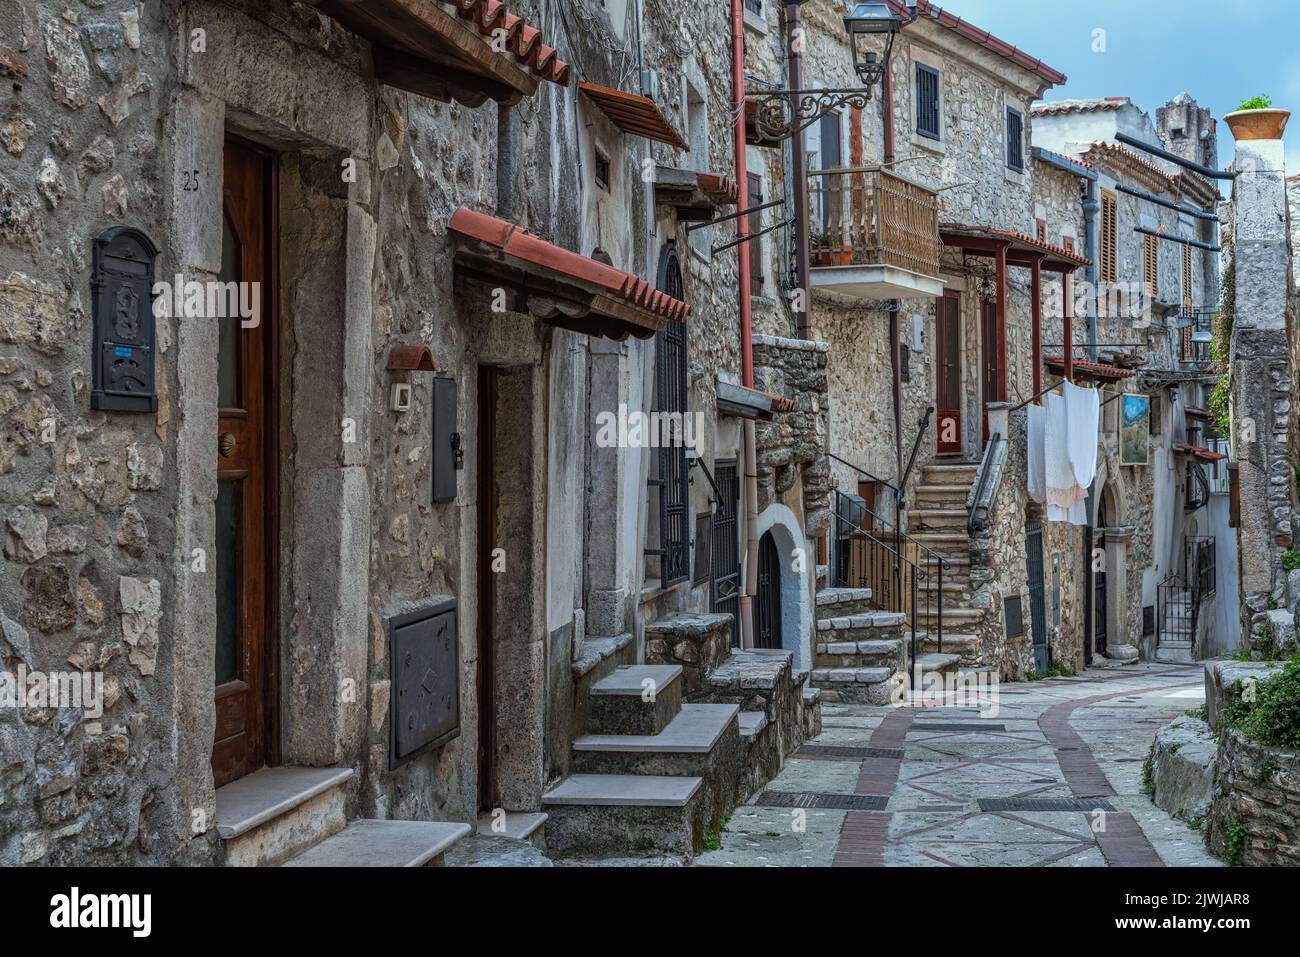 Anciennes et anciennes ruelles du village médiéval de Vico del Gargano. Caractéristiques sont les étapes étroites pour accéder aux maisons. Vico del Gargano, Pouilles Banque D'Images